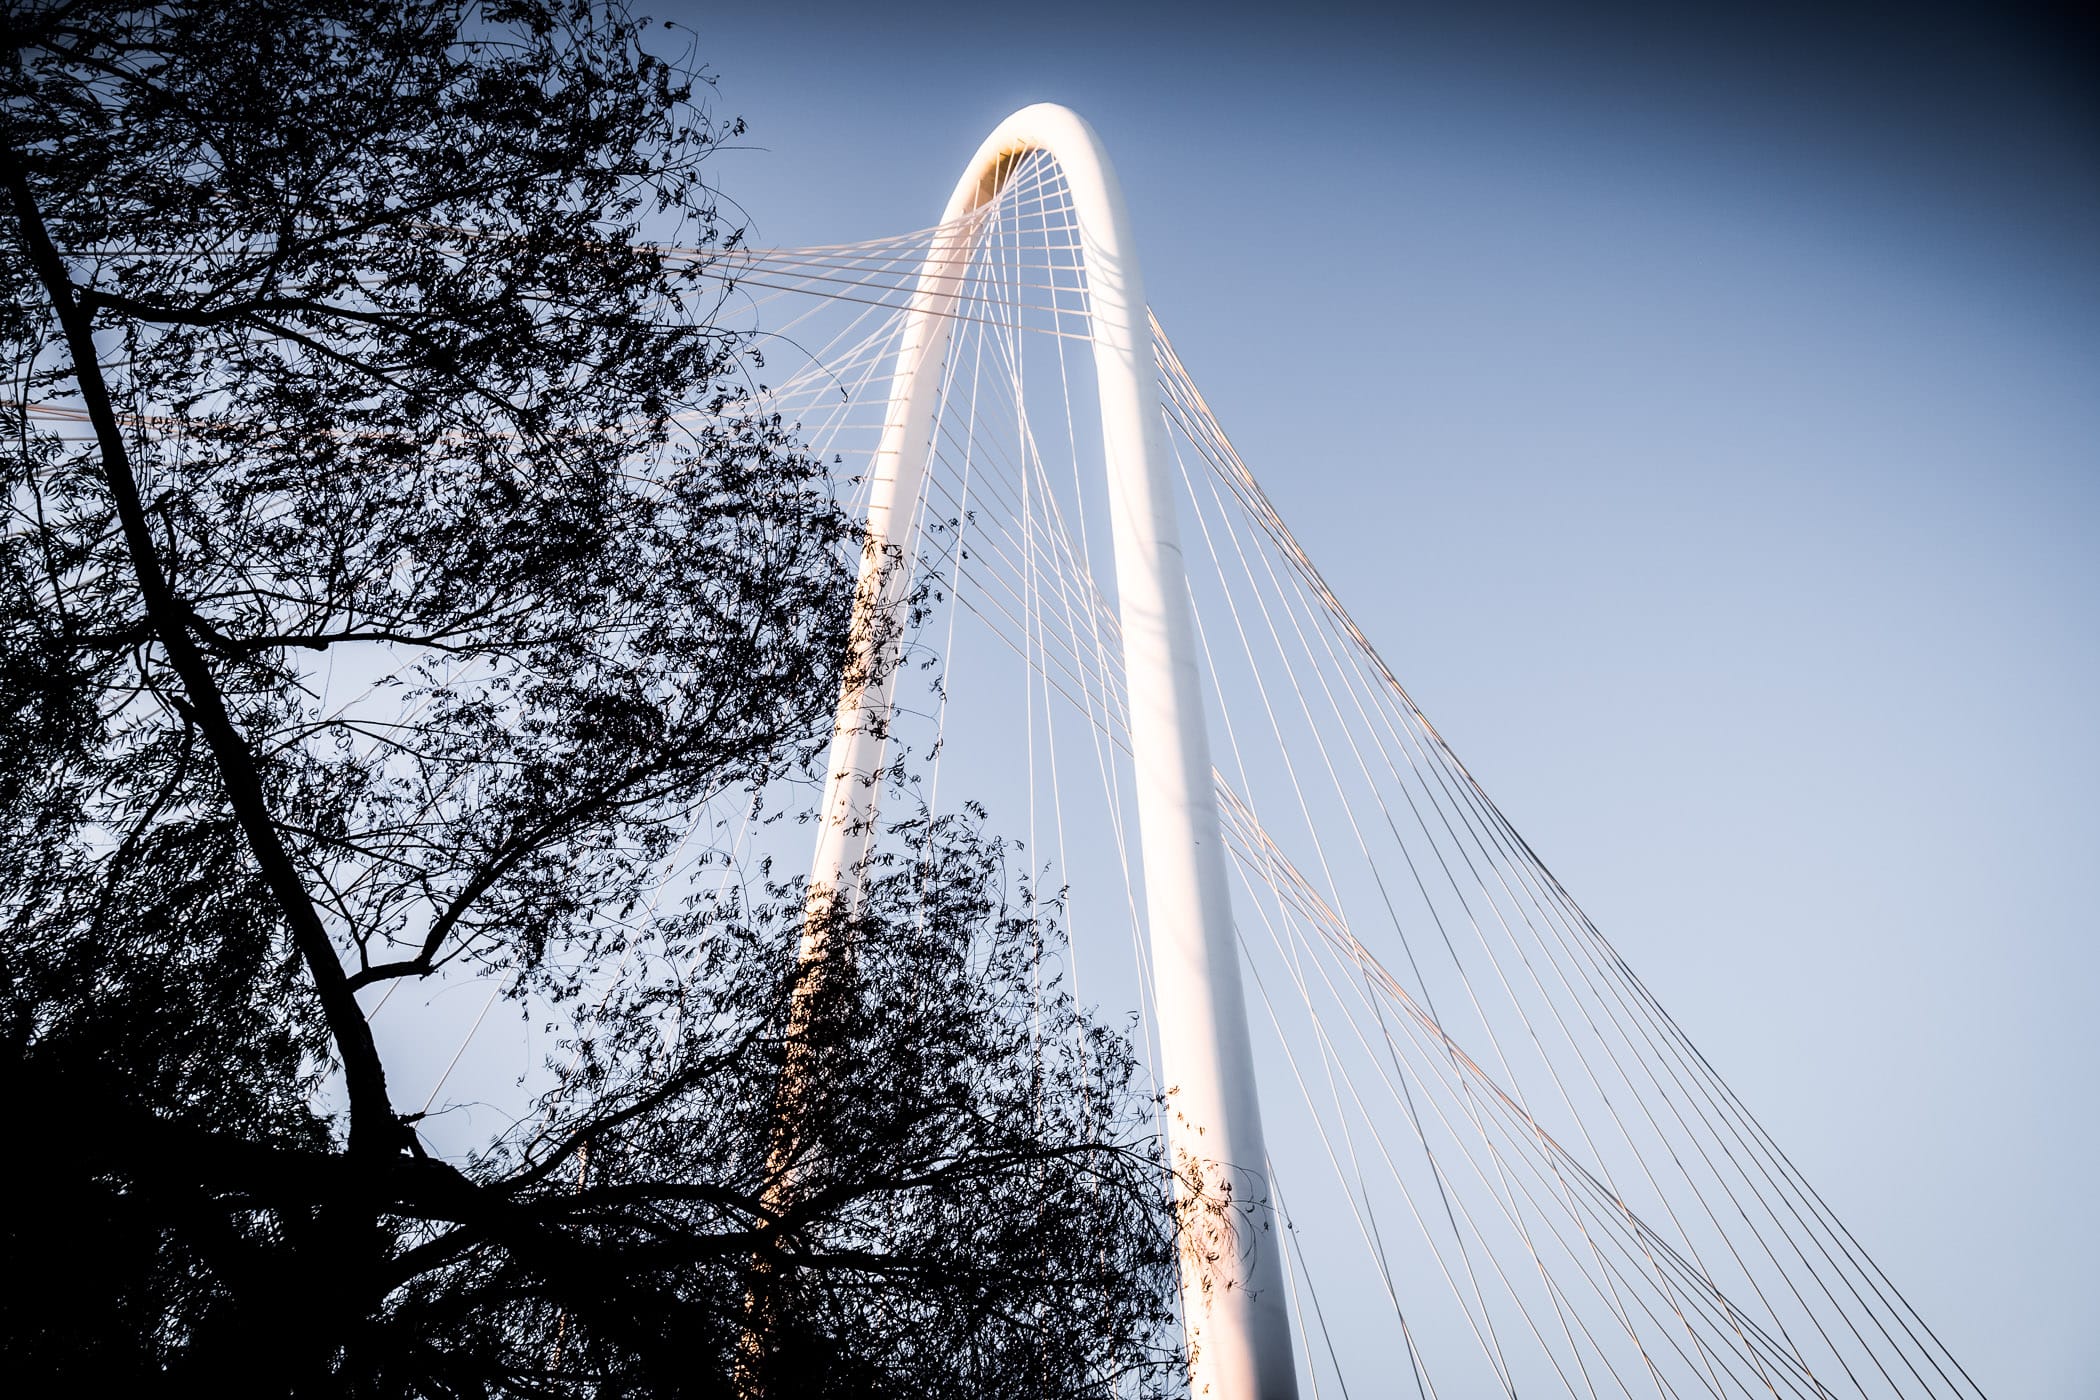 The Santiago Calatrava-designed Margaret Hunt Hill Bridge's arch rises into the sky over Dallas.